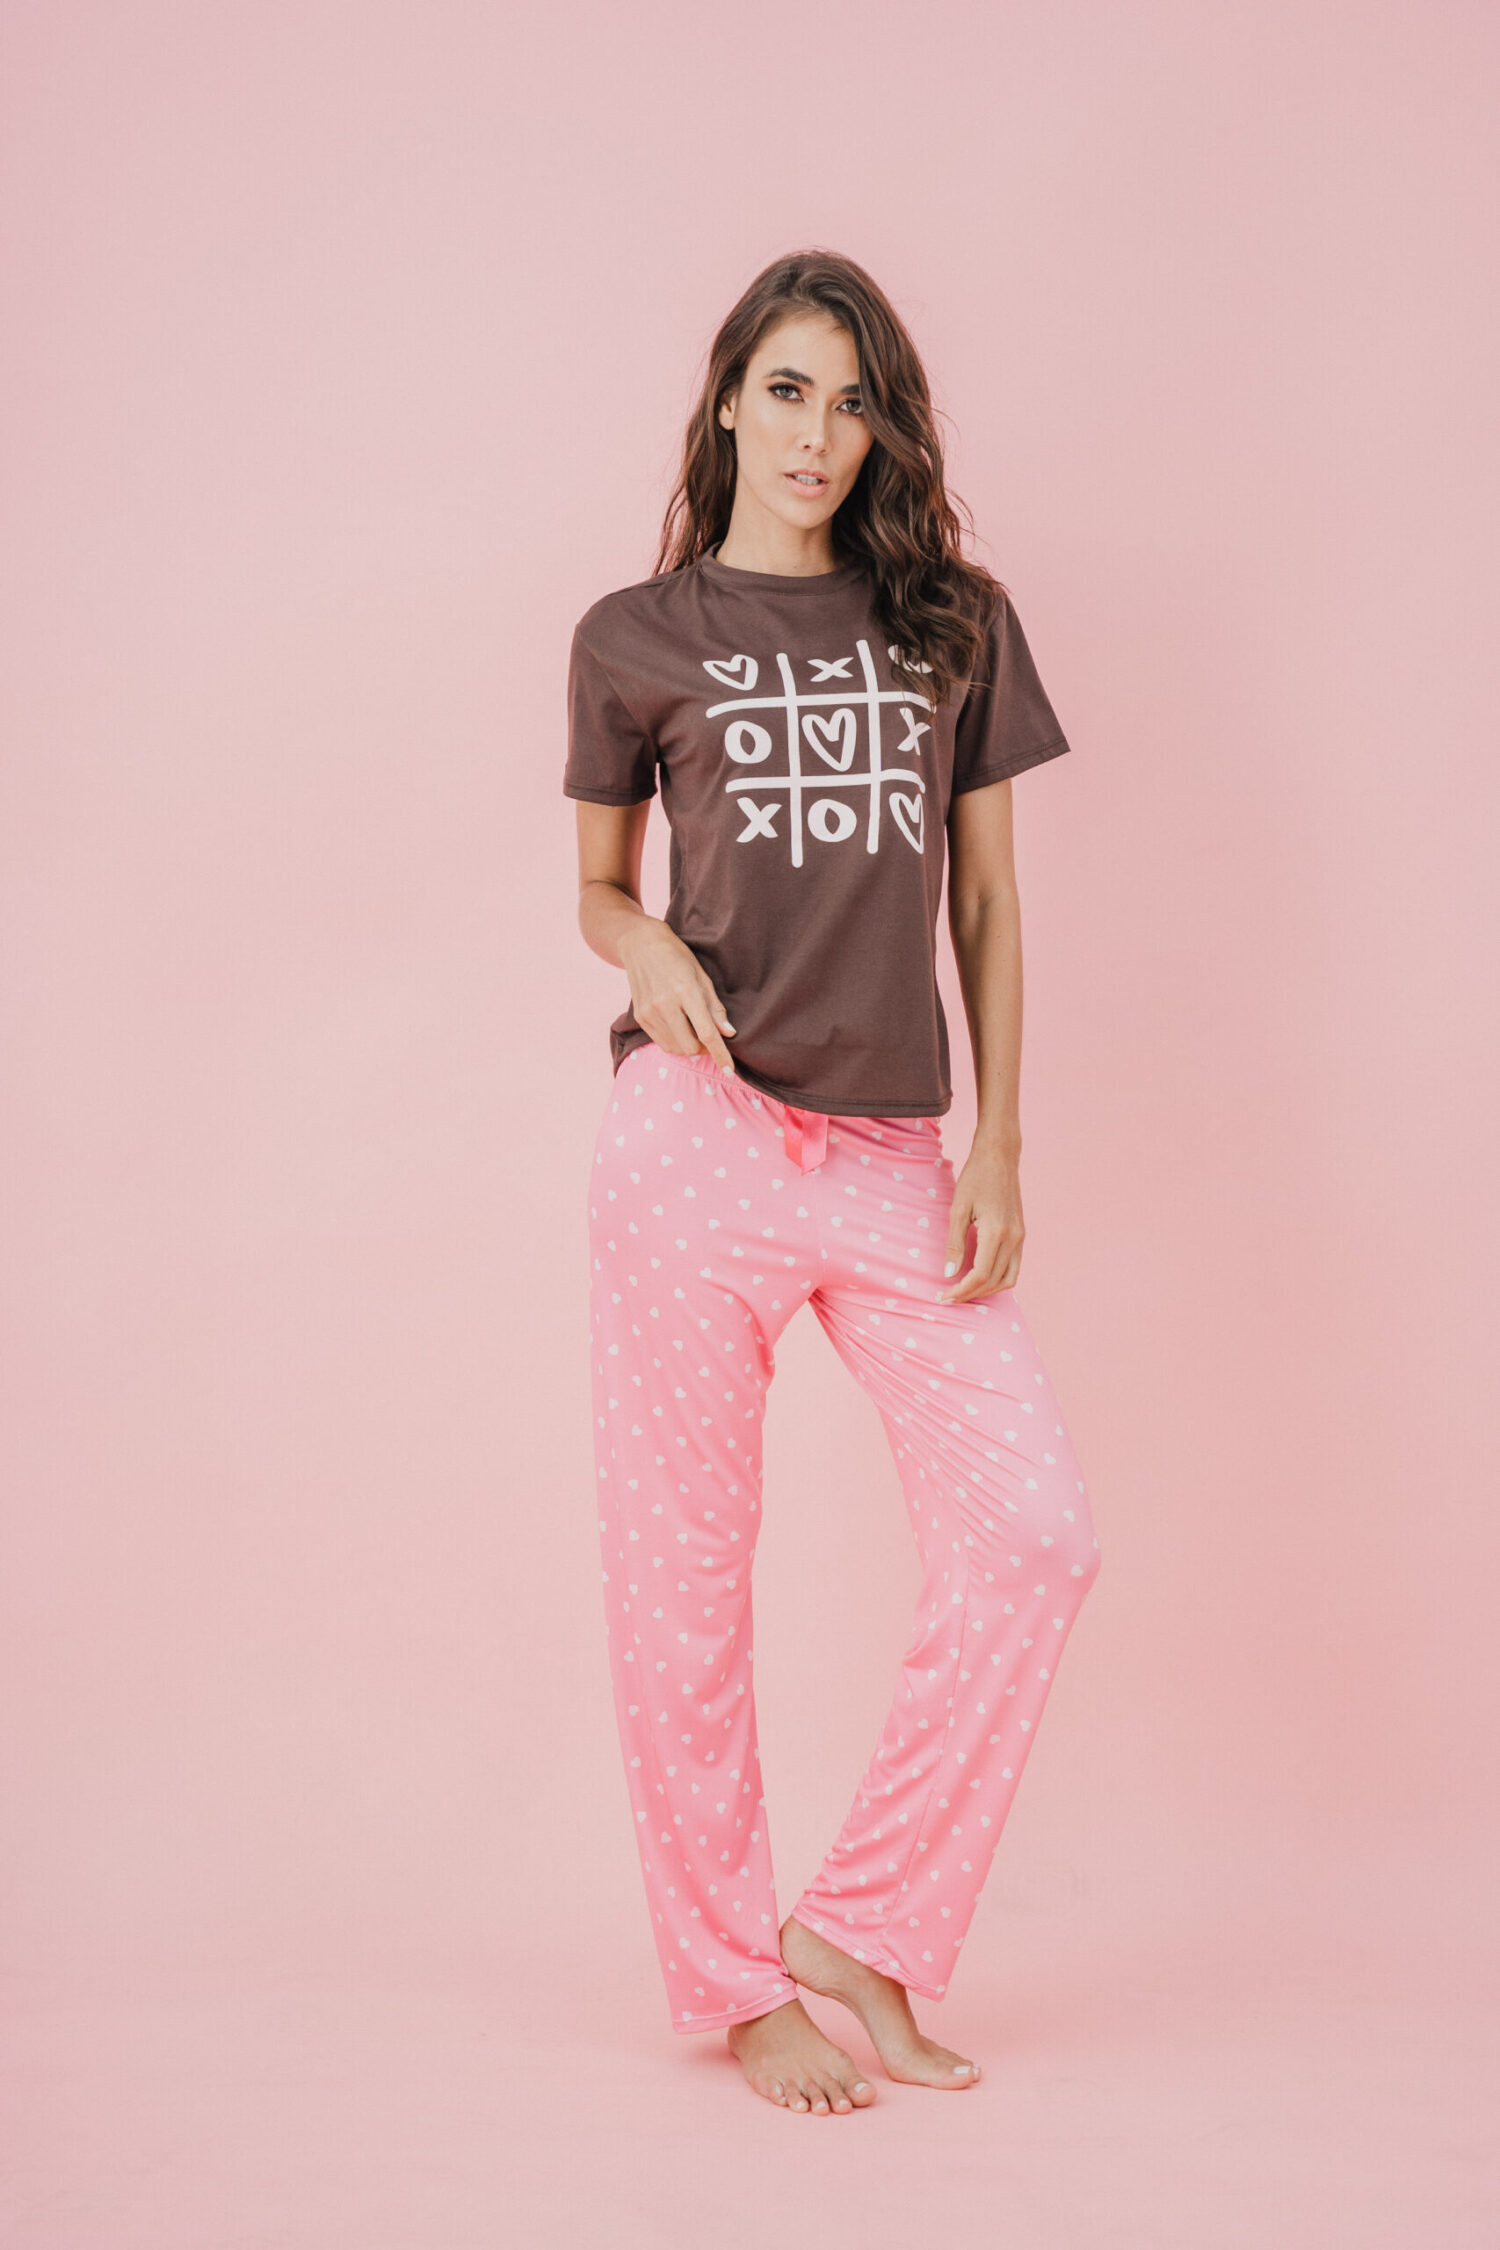 Imagen del producto: Conjunto pantalón rosado corazones camiseta cafe